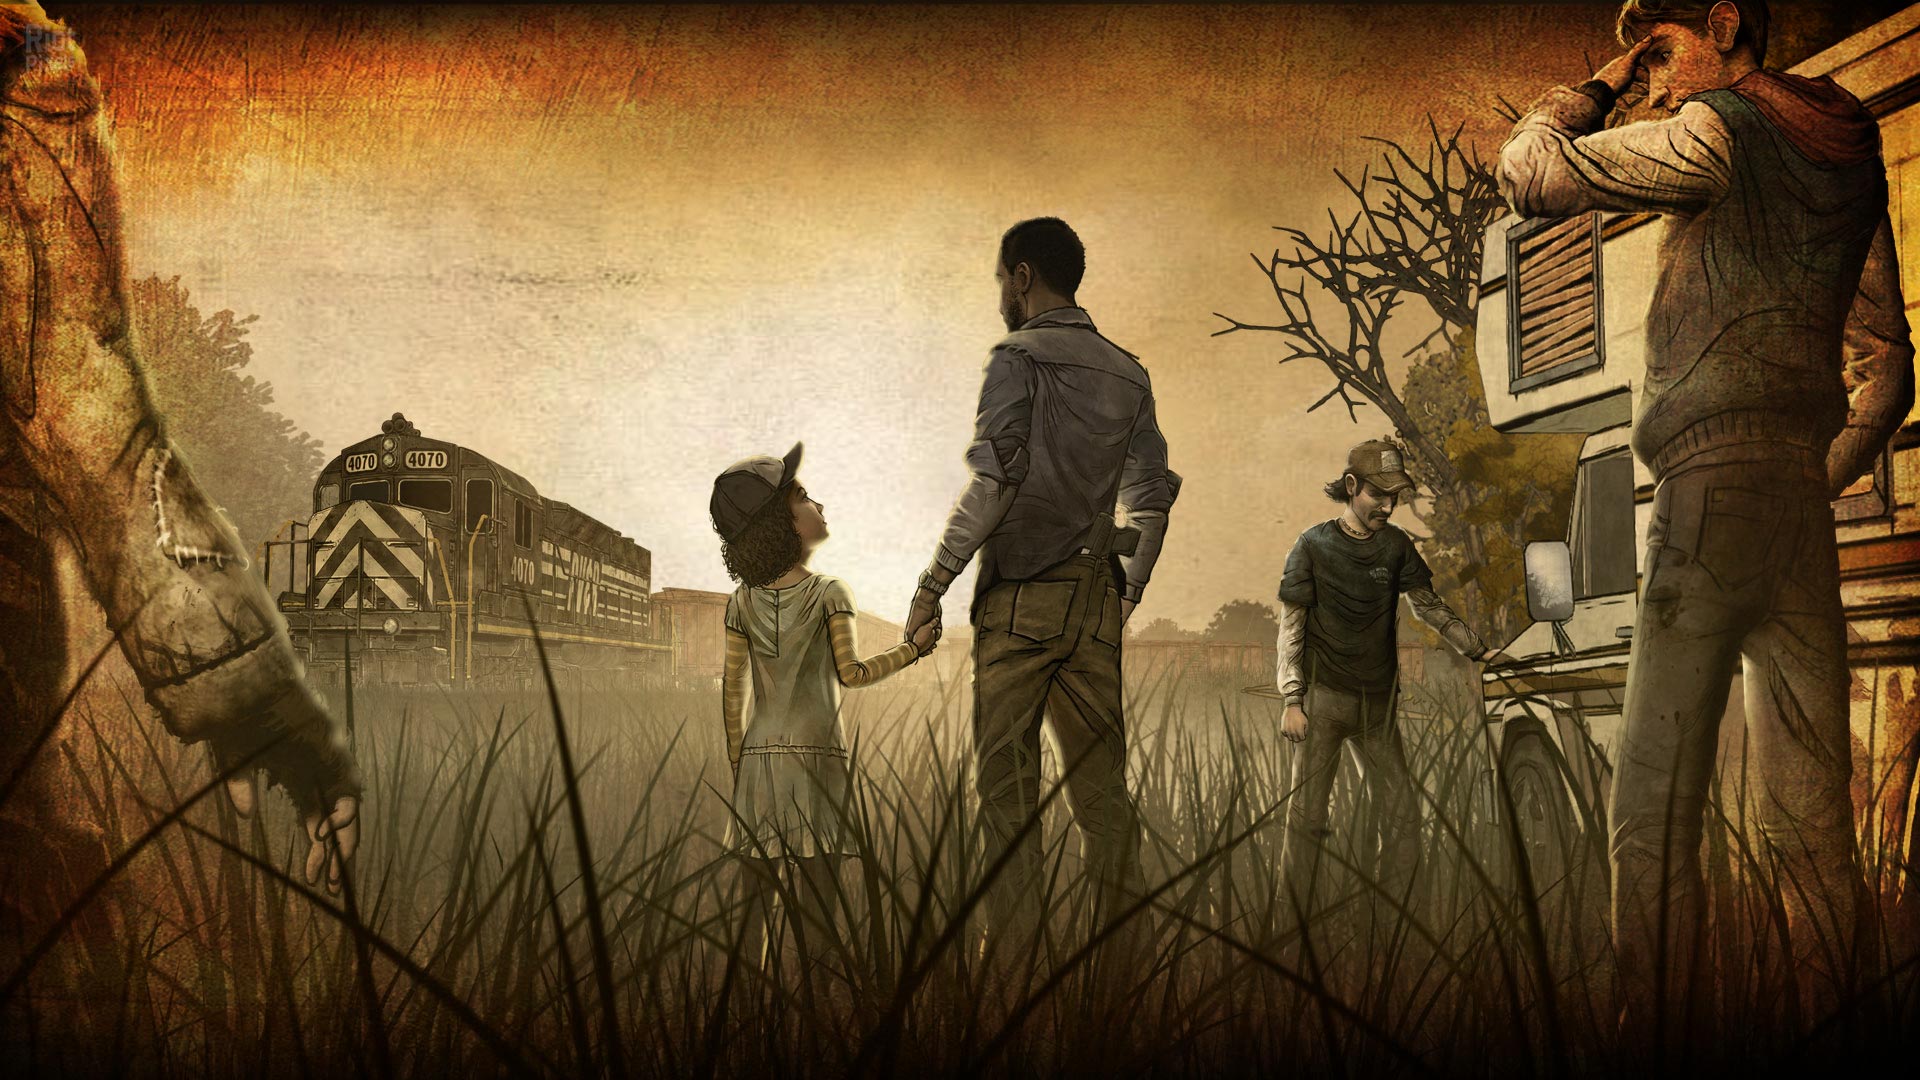 The Walking Dead Wallpapers? — Telltale Community